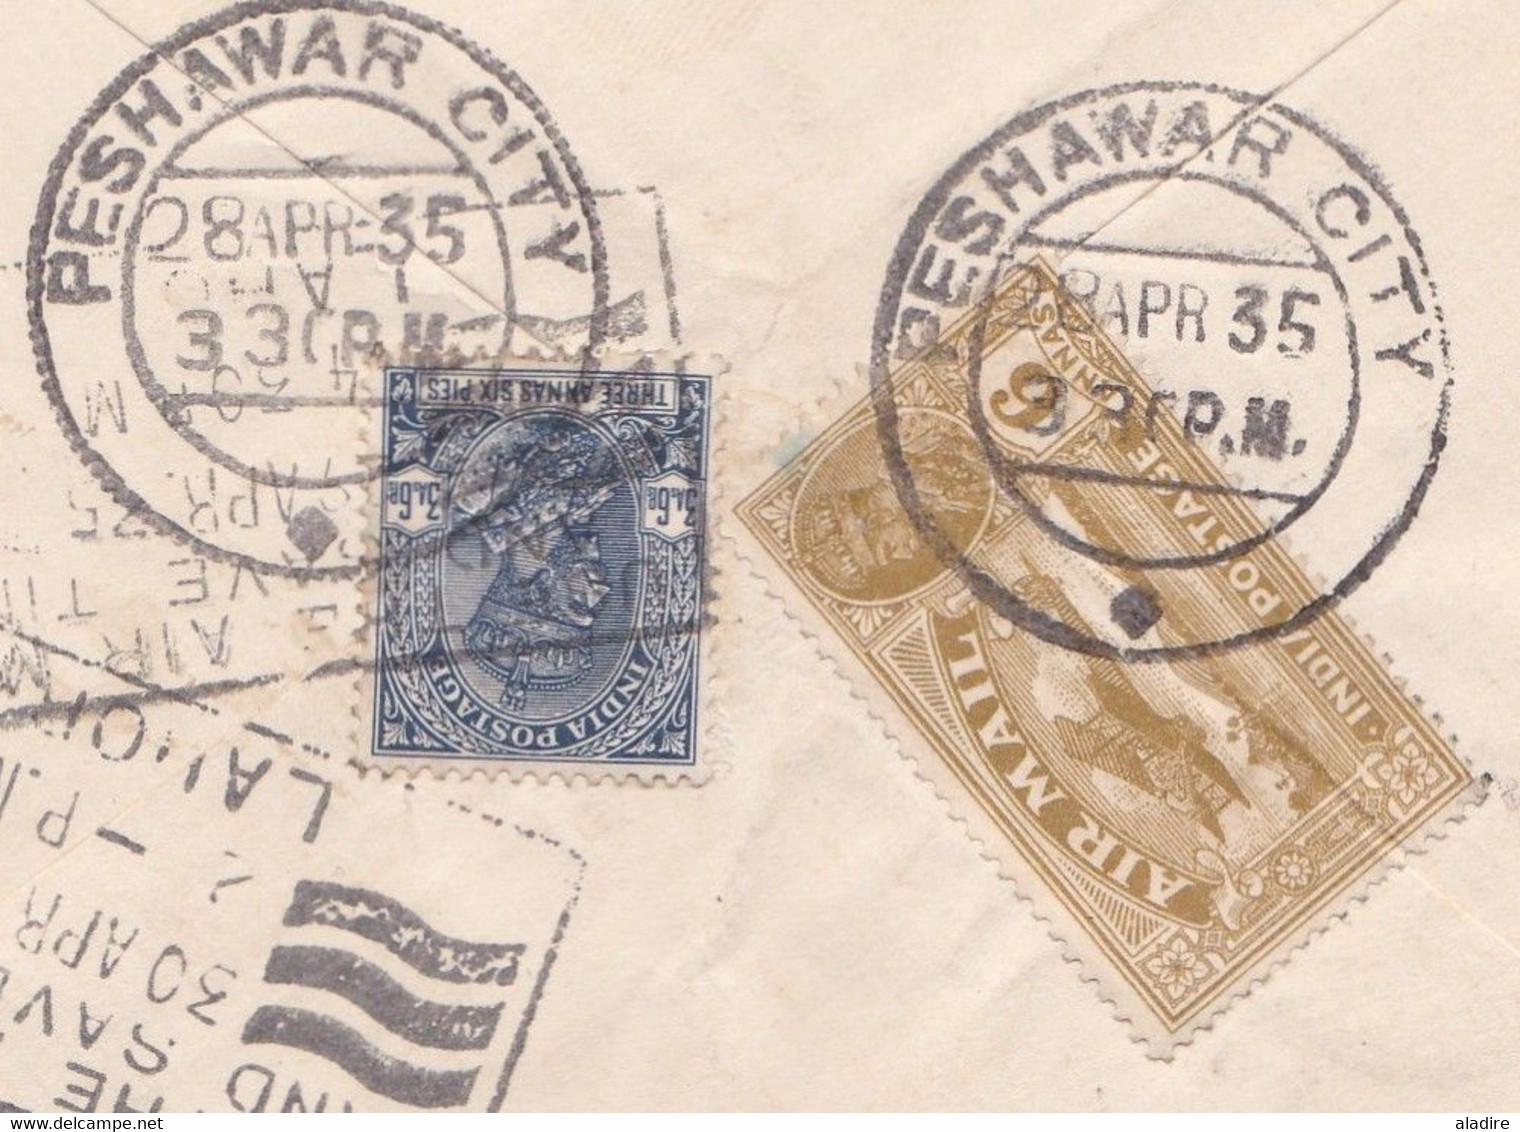 1935 - Enveloppe PAR AVION De PESHAWAR Vers WEISENBURG, Allemagne - USE THE AIR MAIL Ad - 1911-35 King George V